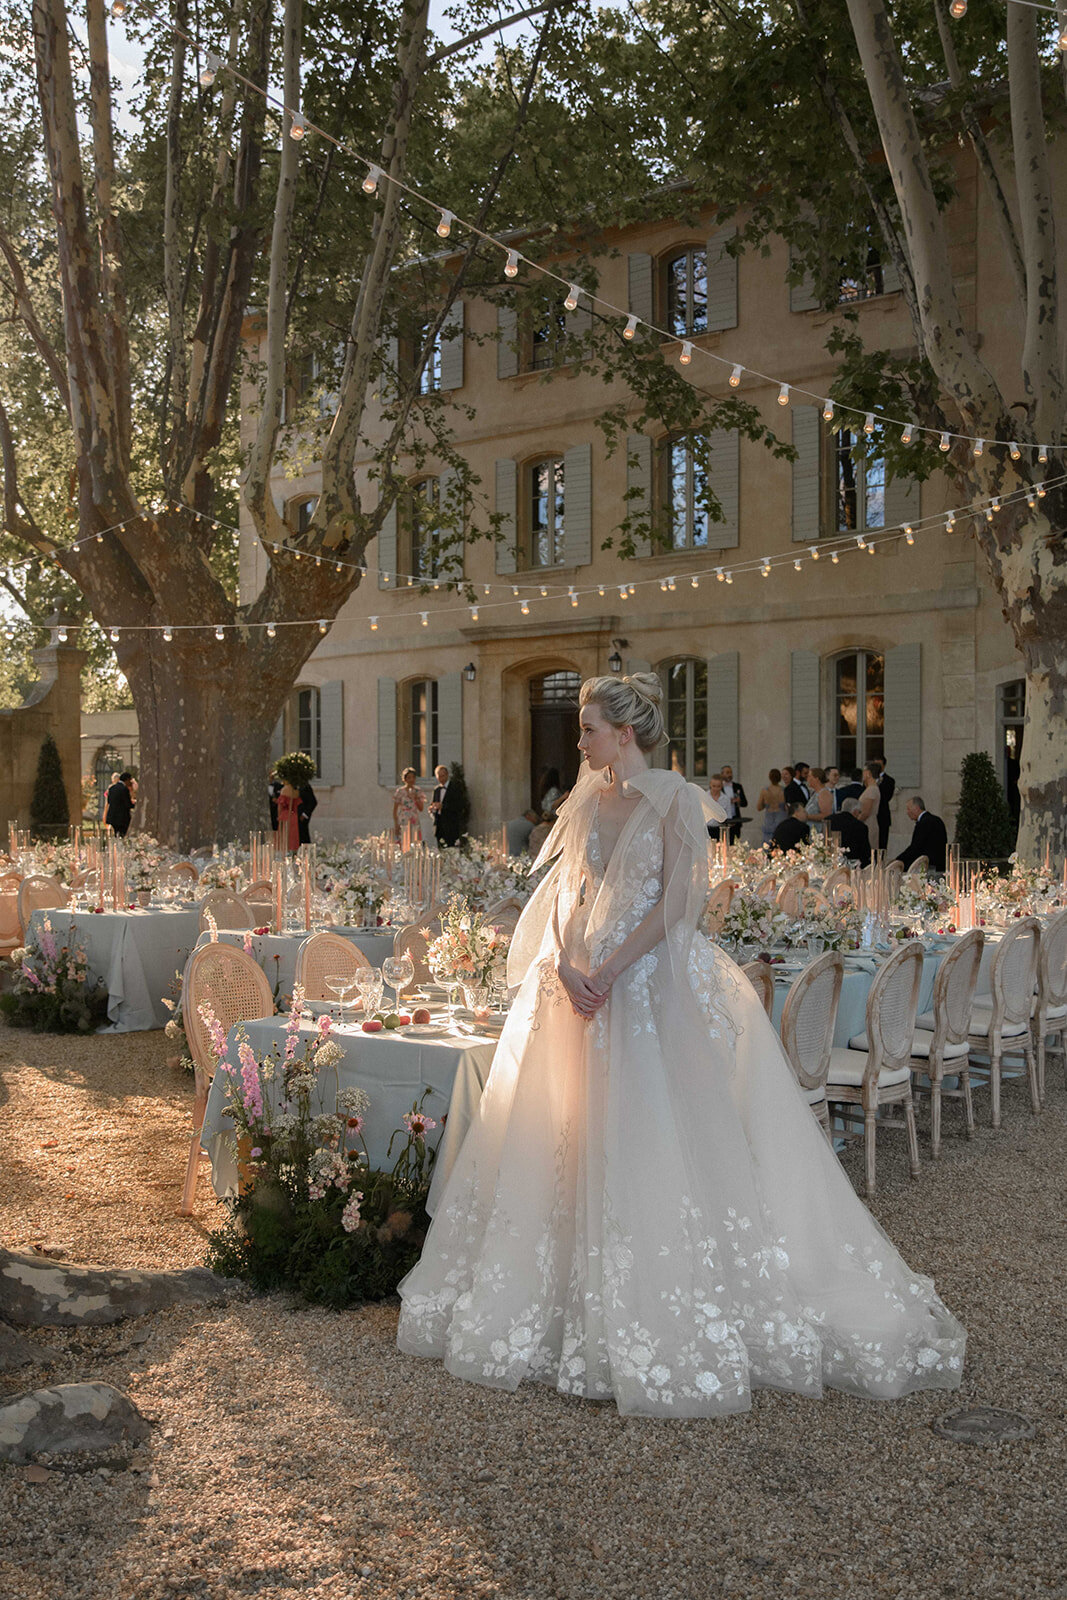 CapucineAtelierFloral_Provence_Fleuriste_FineArtFlorist_Wedding-17